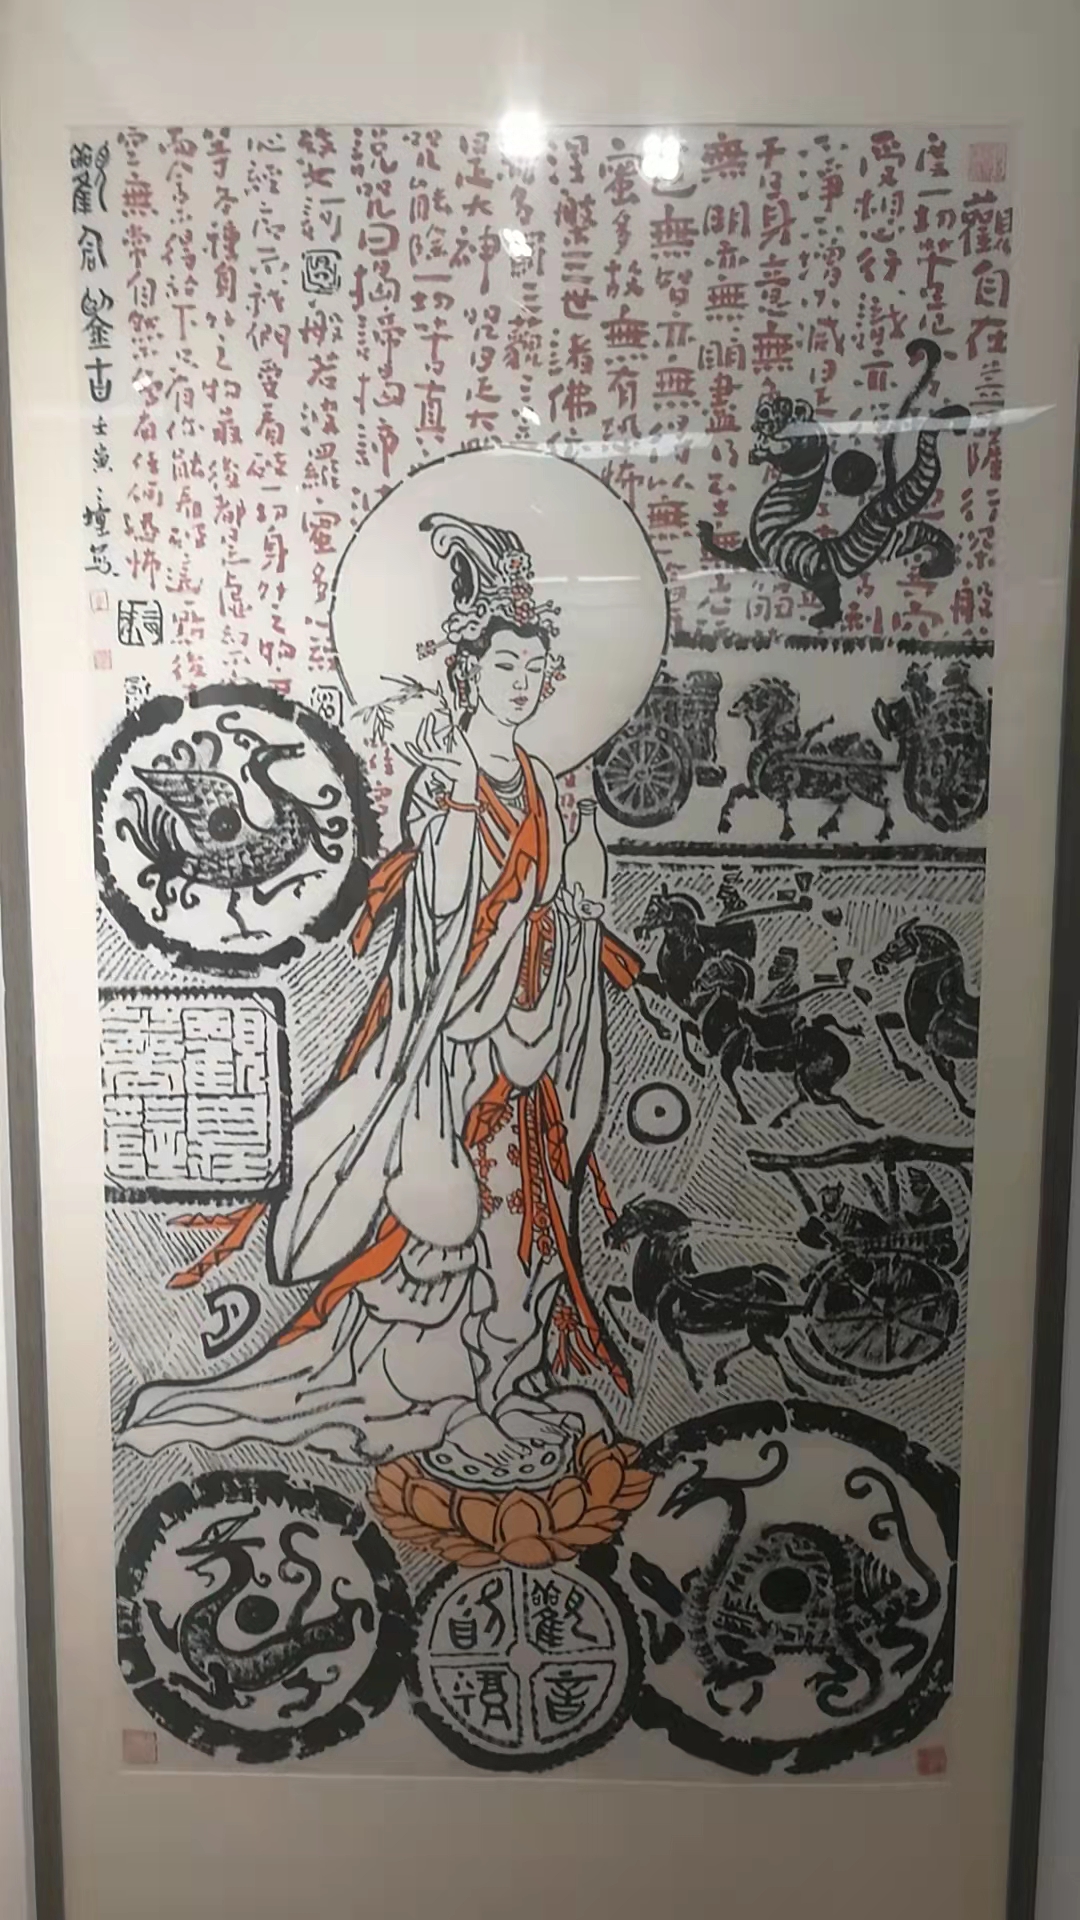 马培童焦墨艺术展暨学术研讨会在北京举行